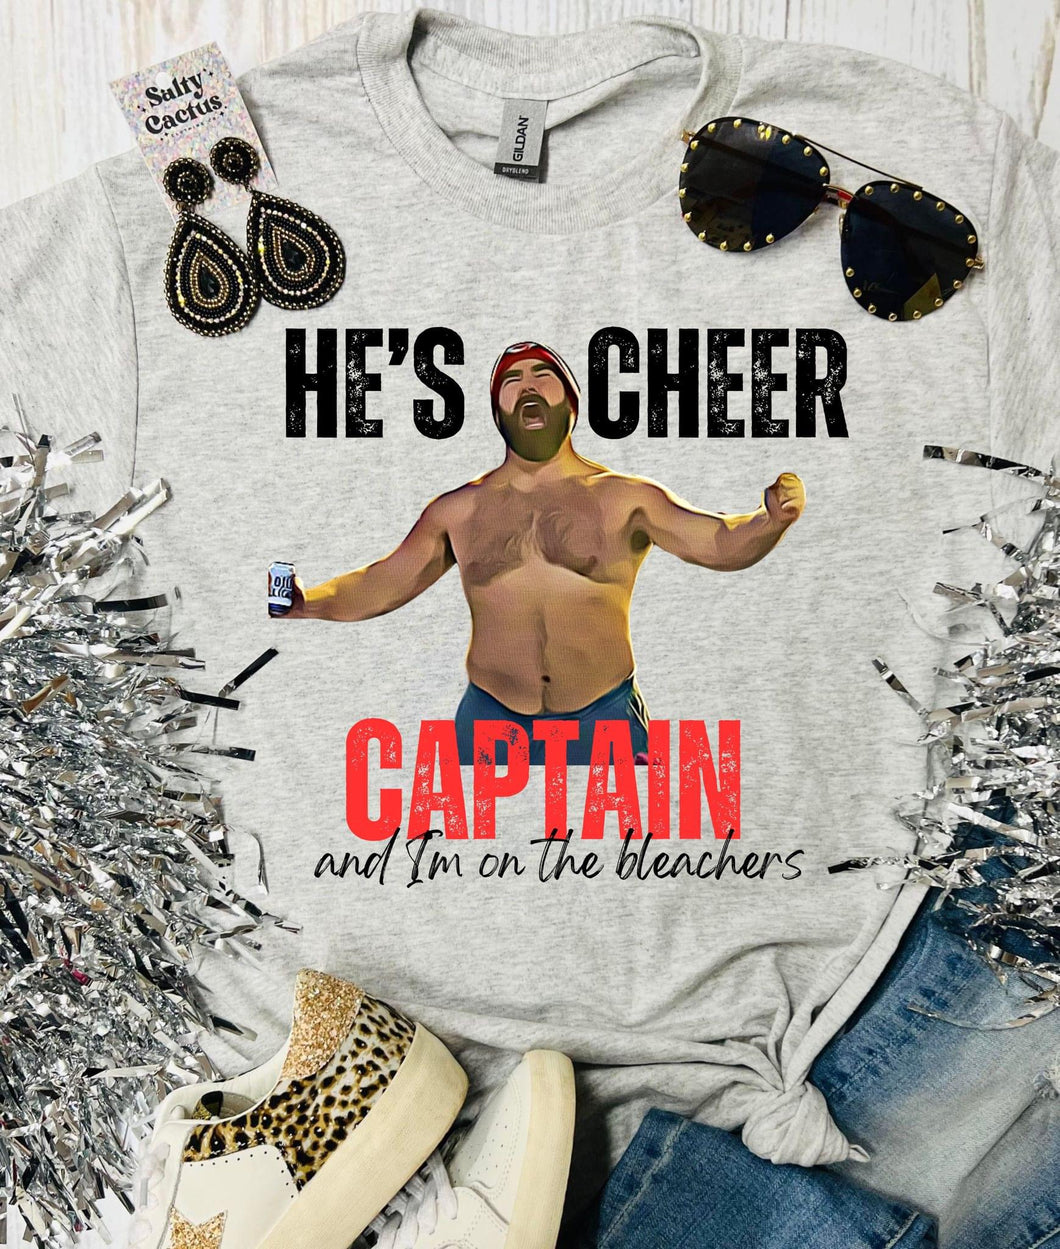 He’s Cheer Captain